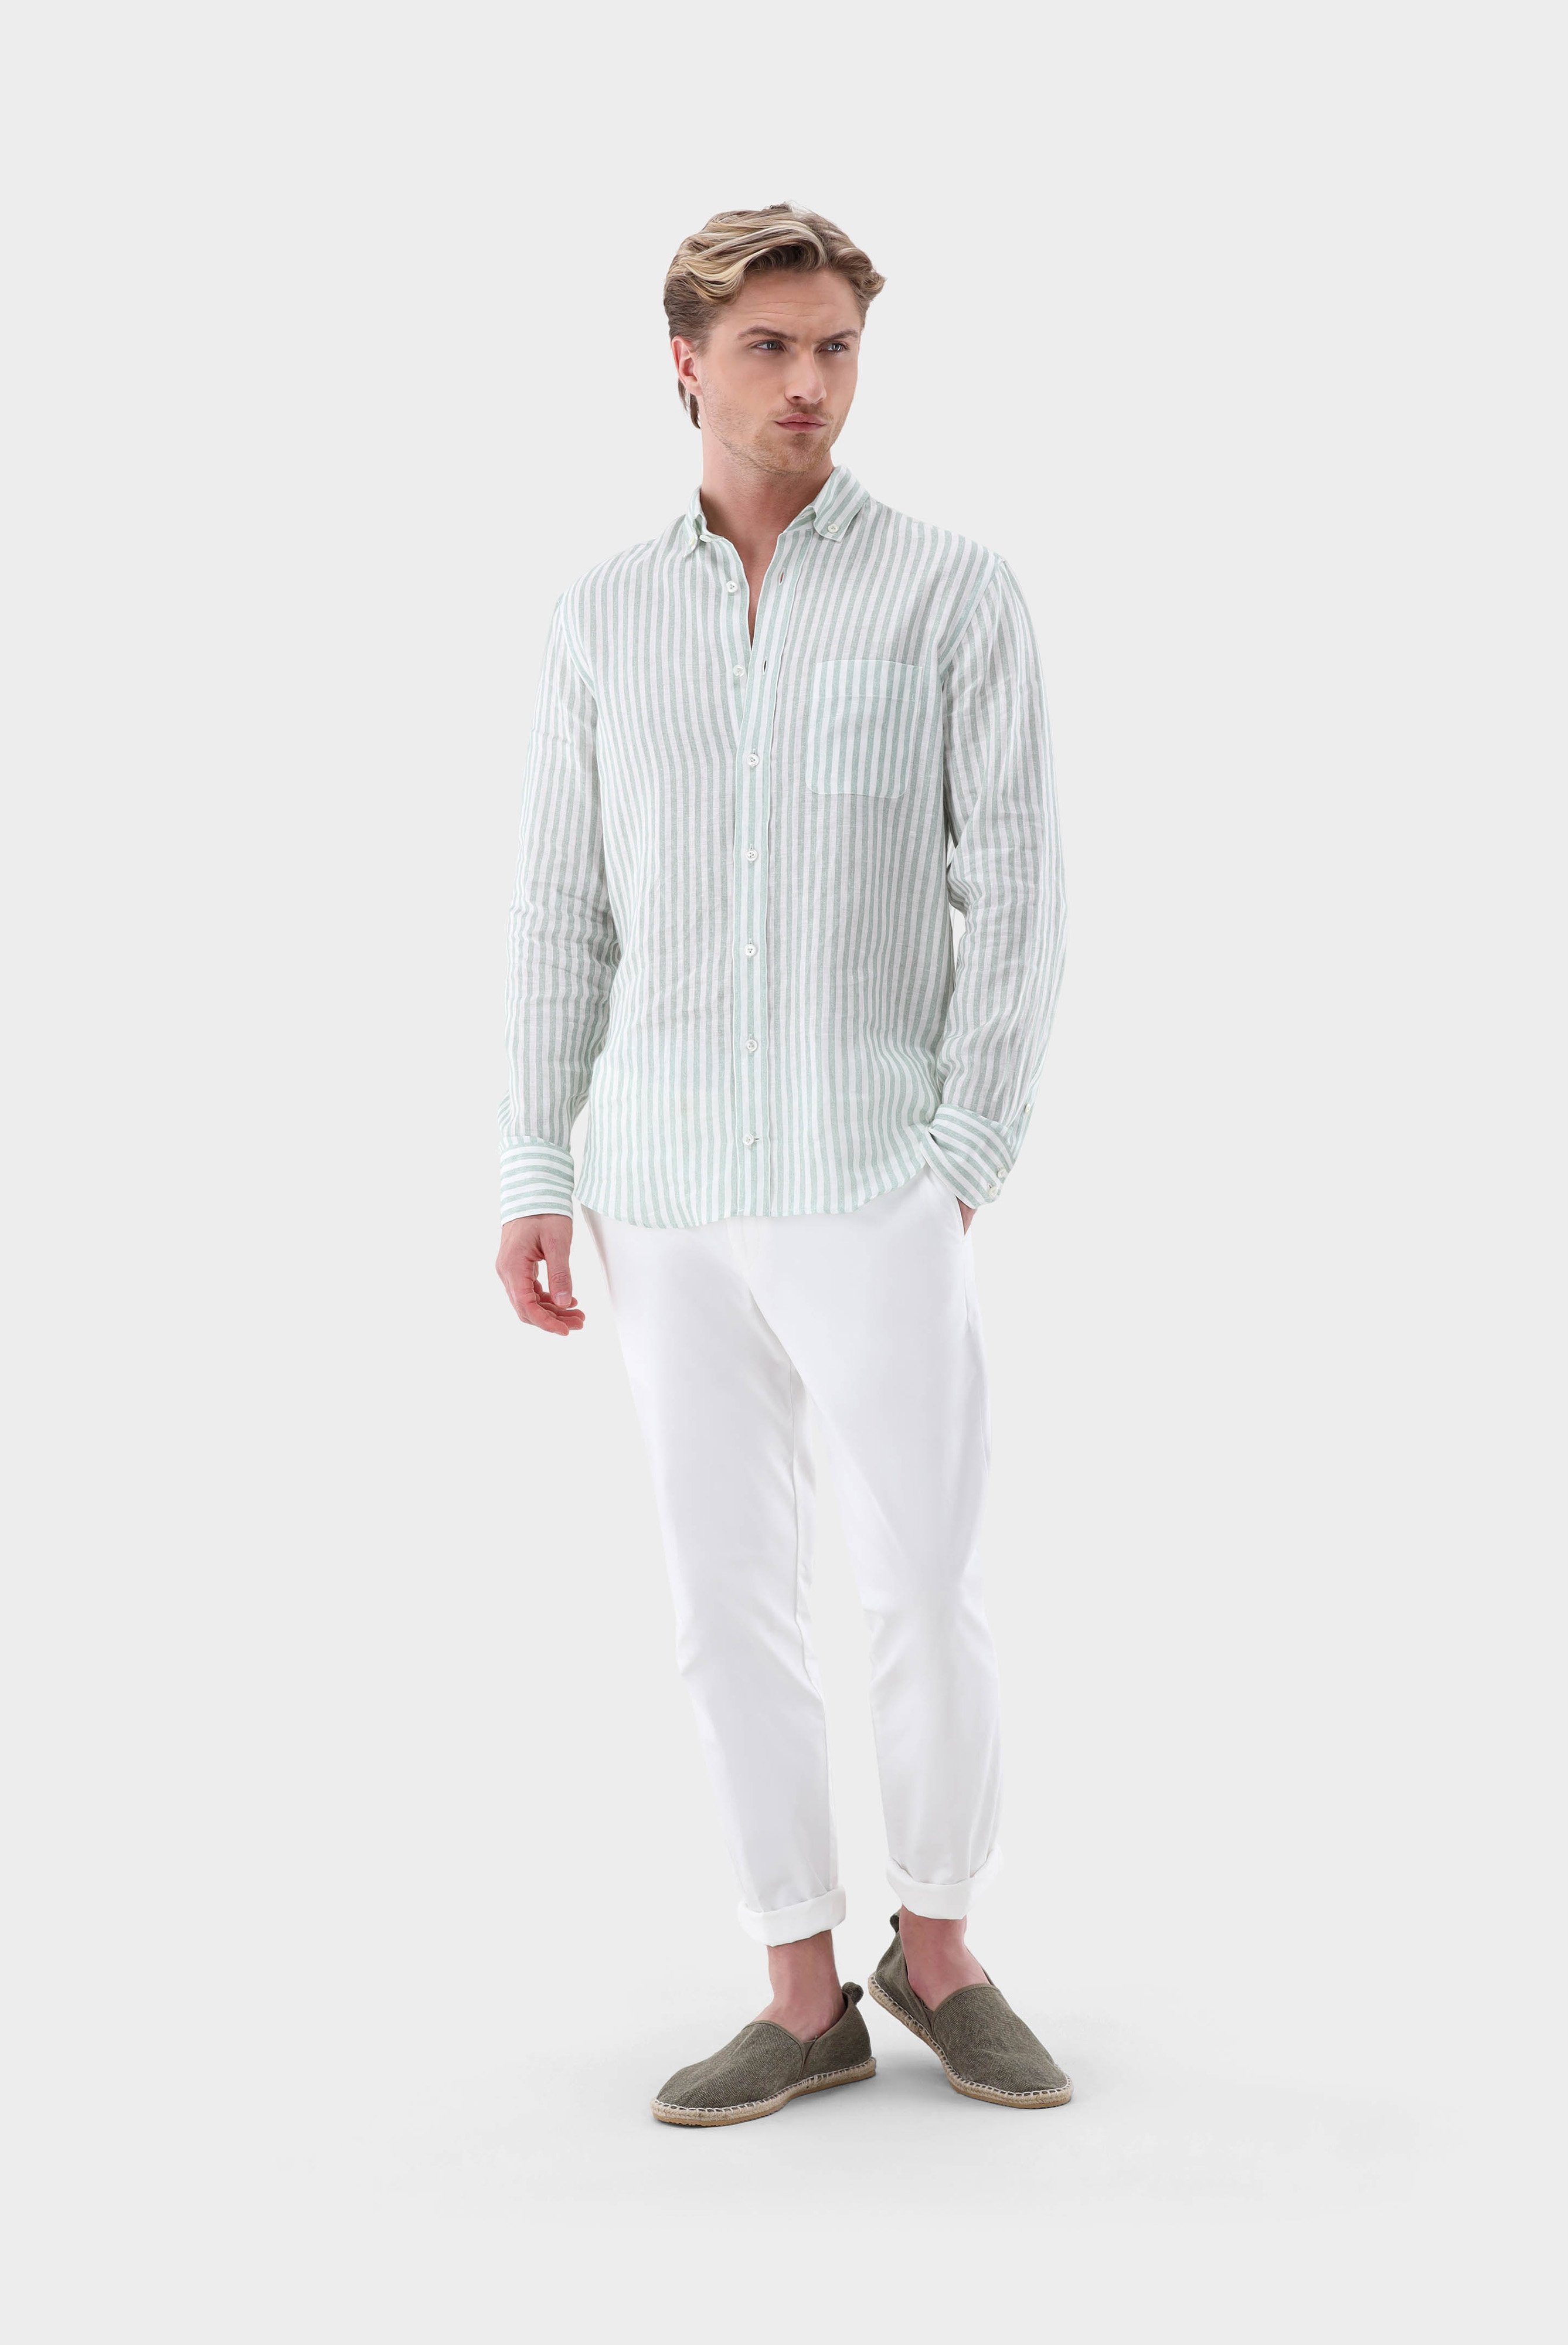 Casual Hemden+Leinenhemd mit Streifen-Druck Tailor Fit+20.2013.9V.170352.940.39